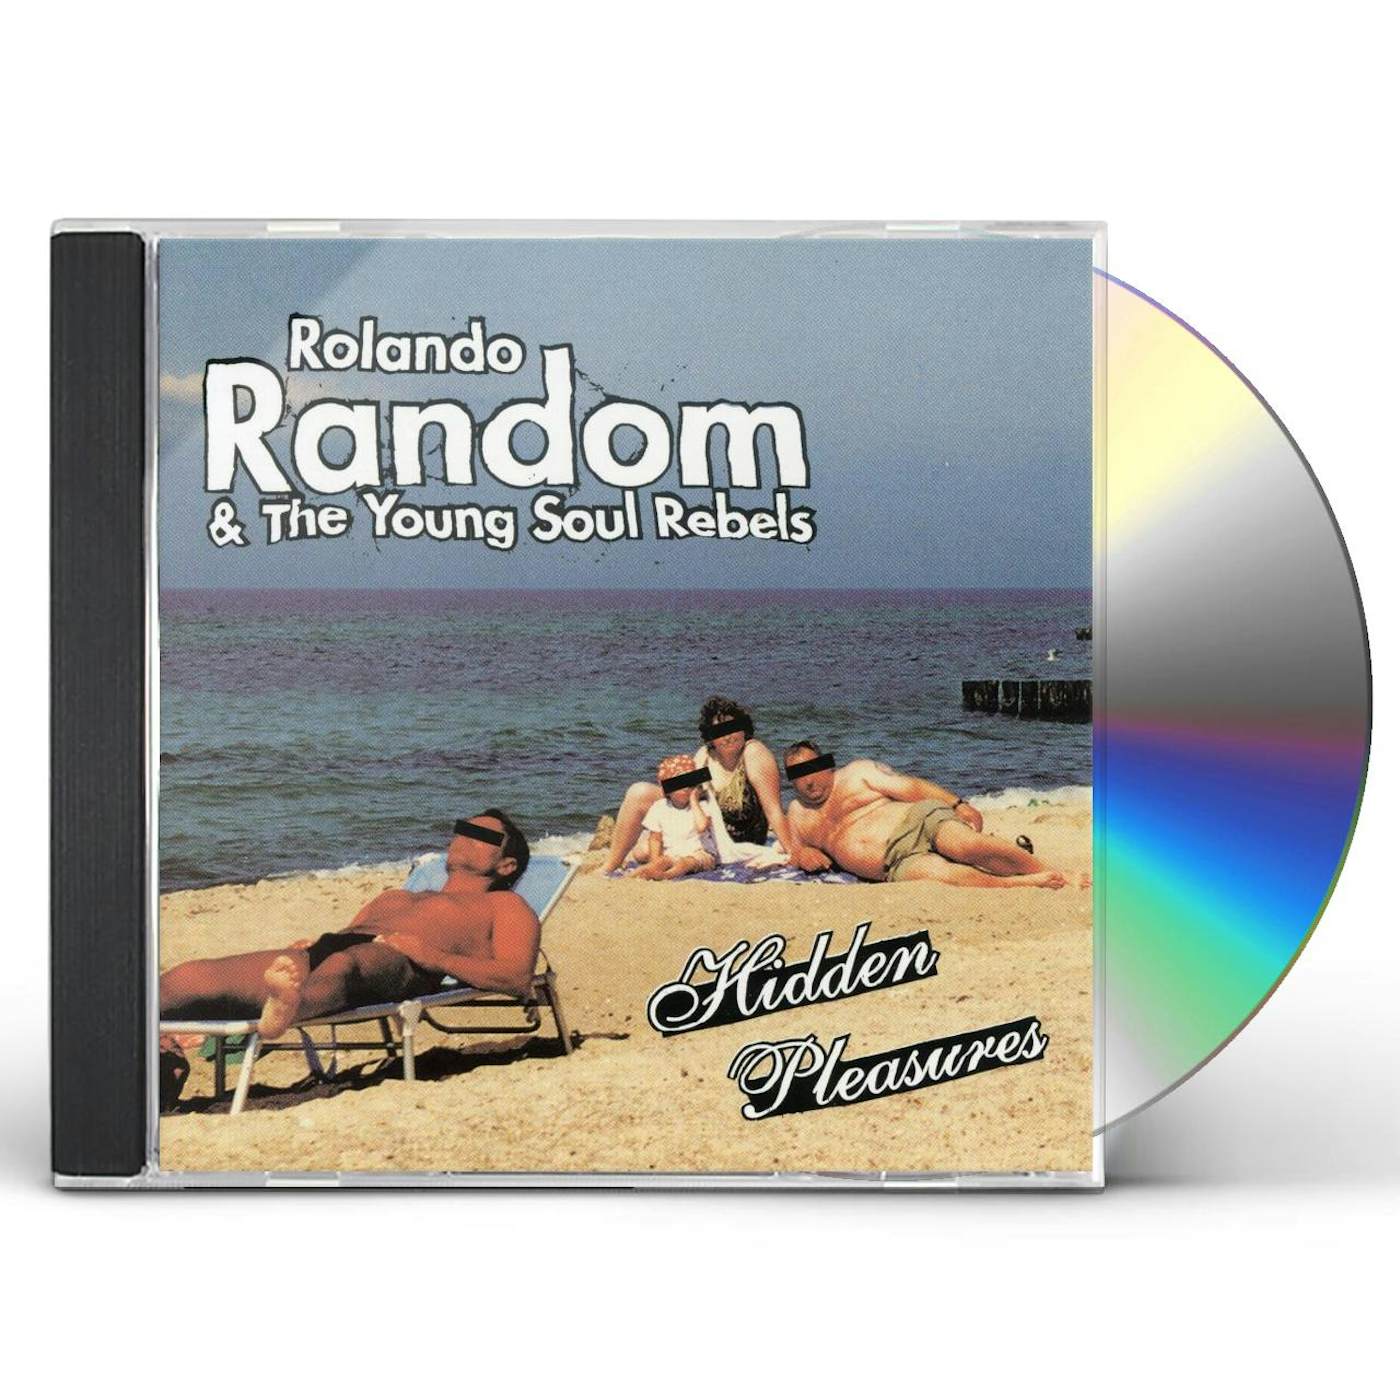 Rolando Random & The Young Soul Rebels HIDDEN PLEASURES CD